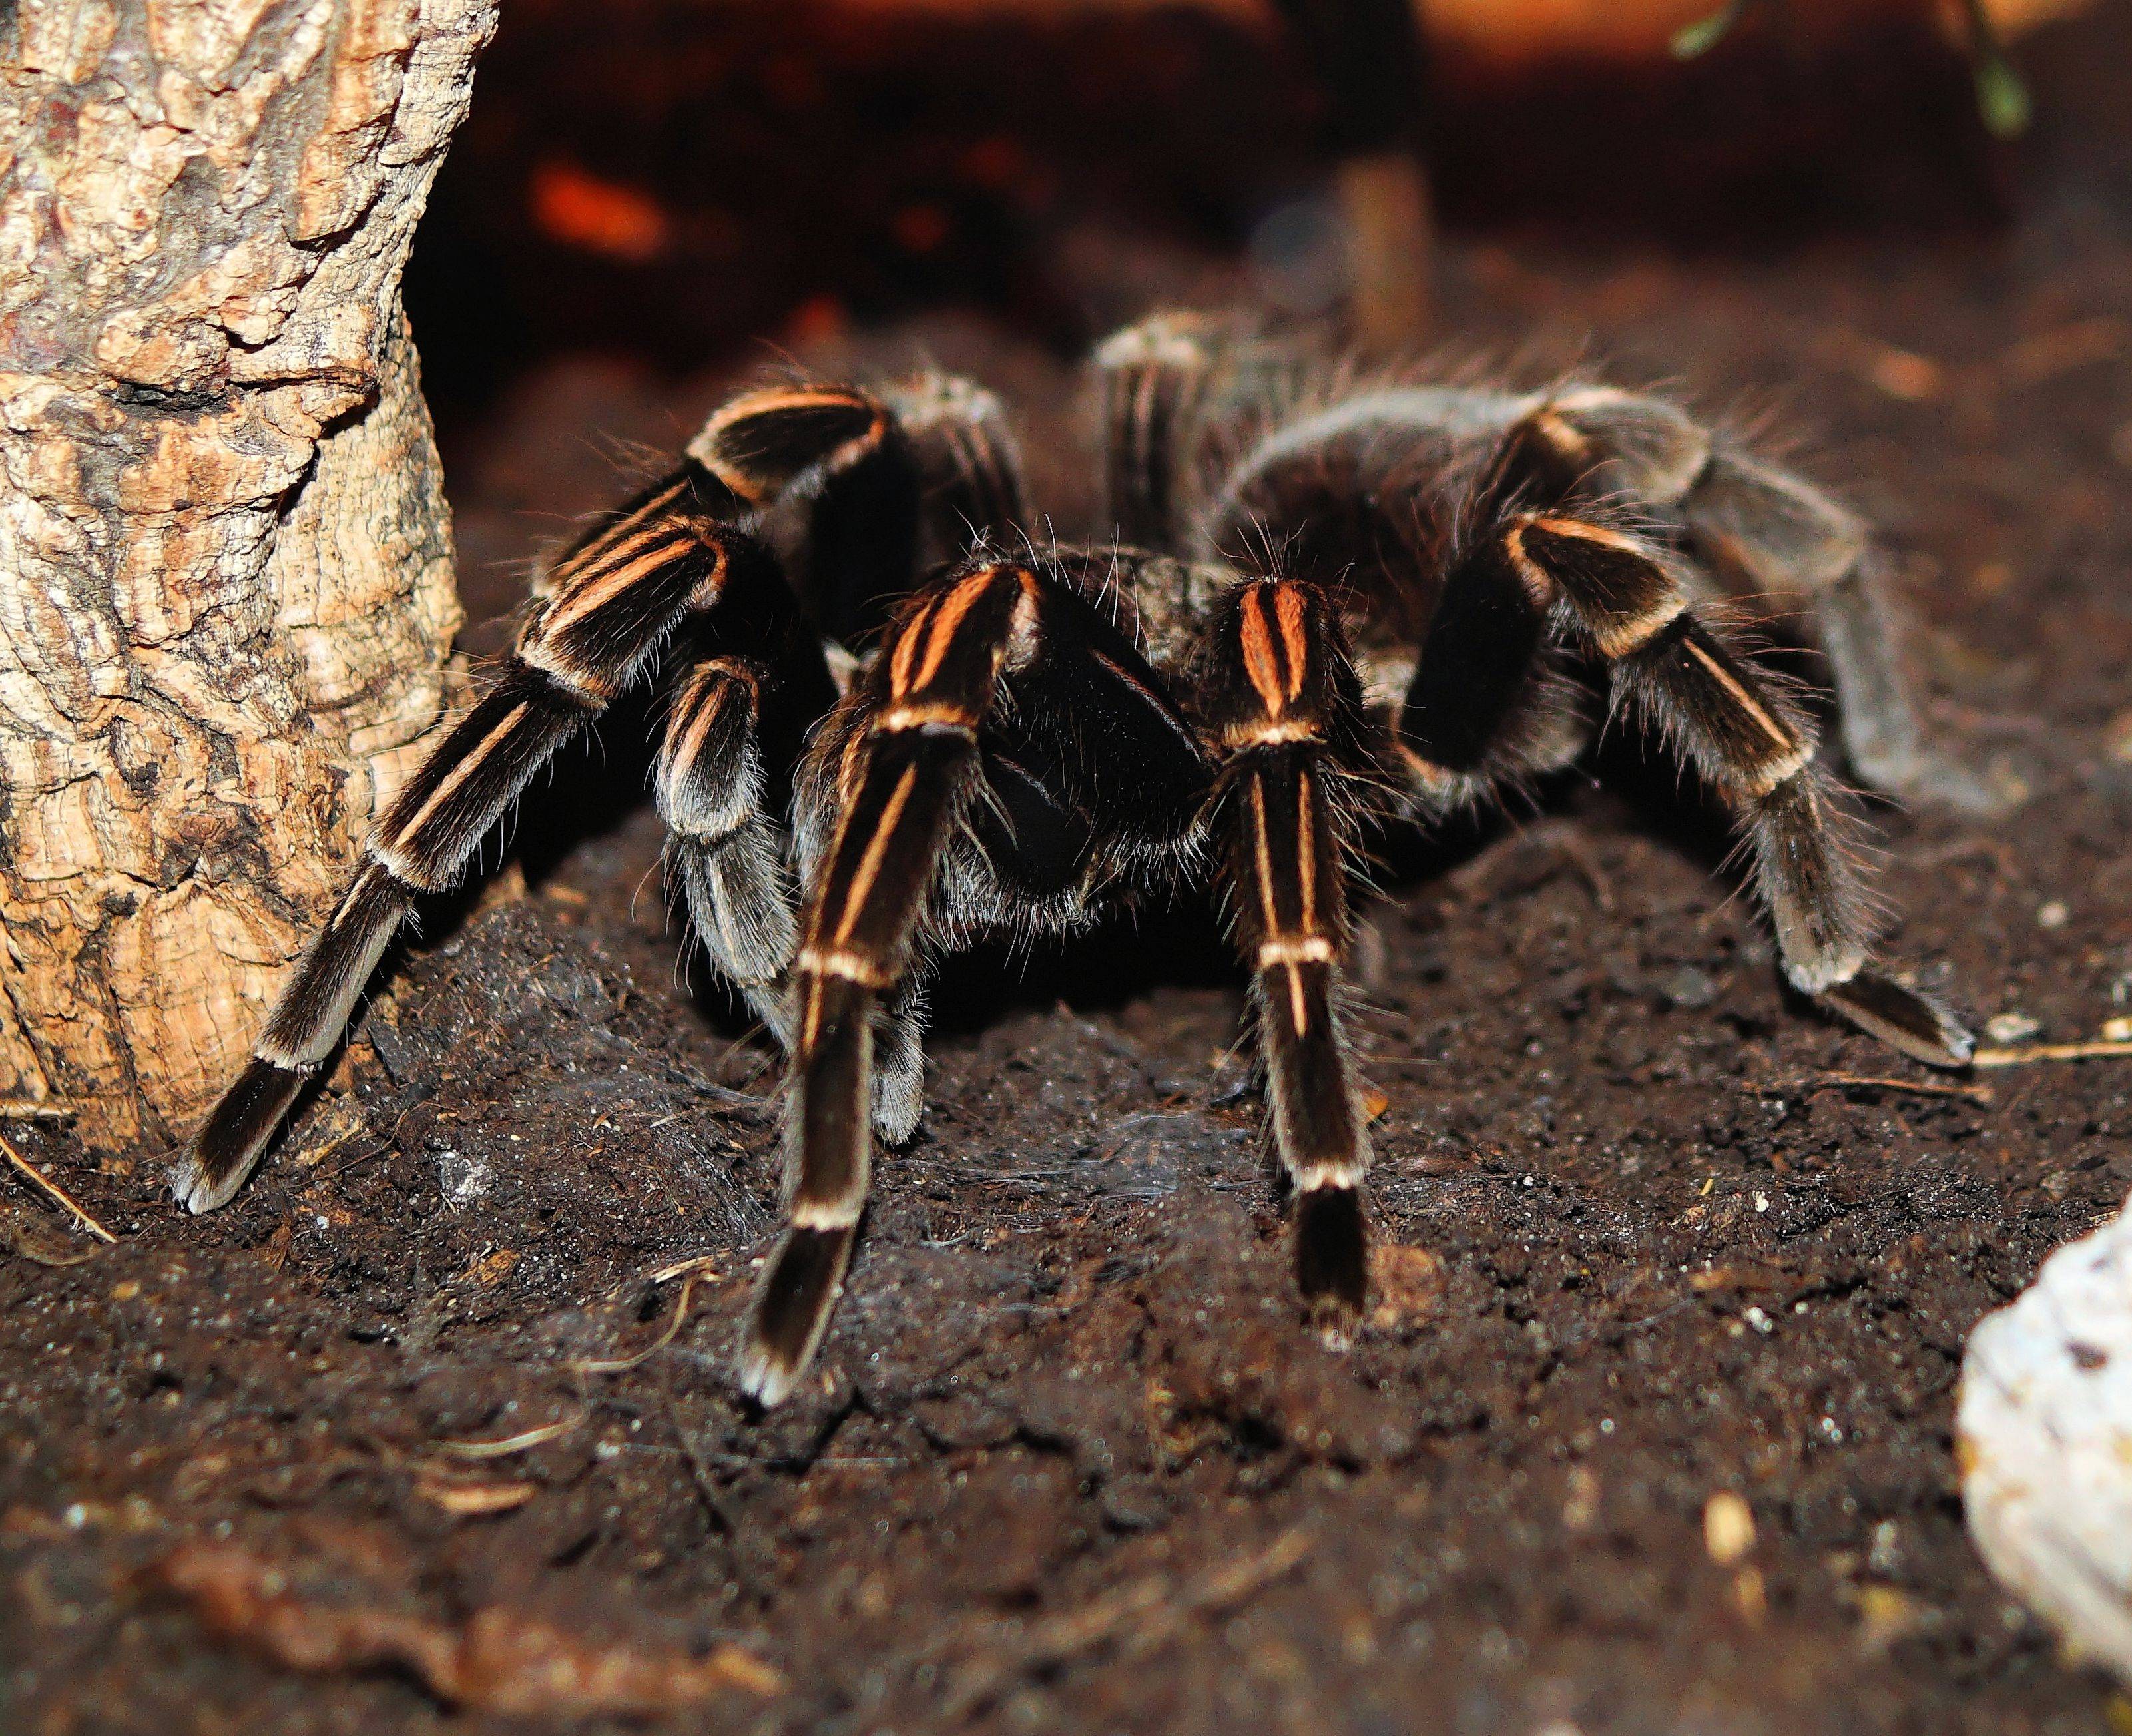 Паук мизгирь (южнорусский тарантул) – фото и описание